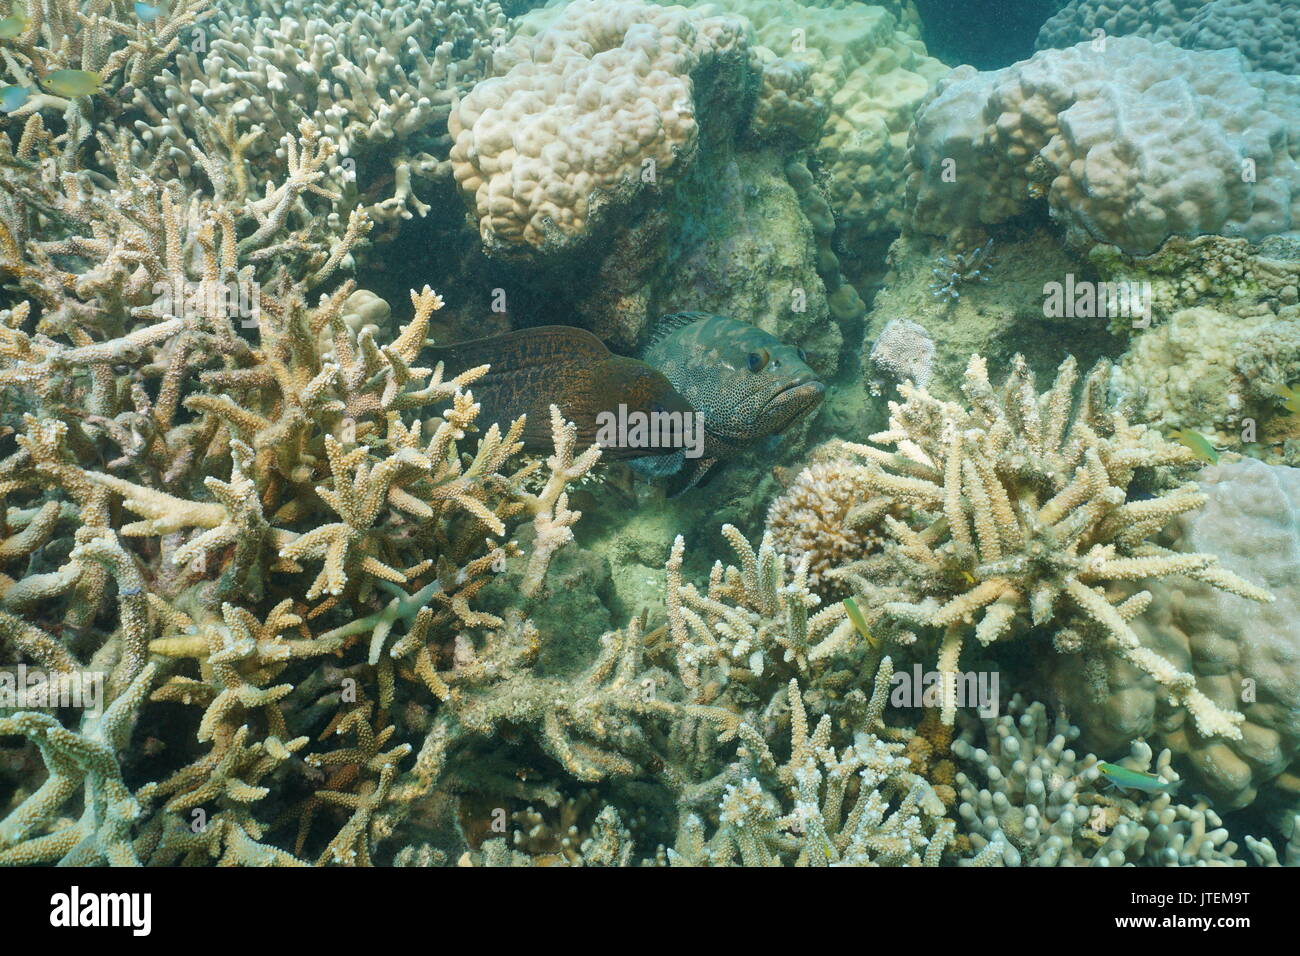 Un sous-marin murène géante avec un mérou camouflage pêcher dans un trou dans la barrière de corail, l'océan Pacifique sud, Nouvelle Calédonie, Océanie Banque D'Images